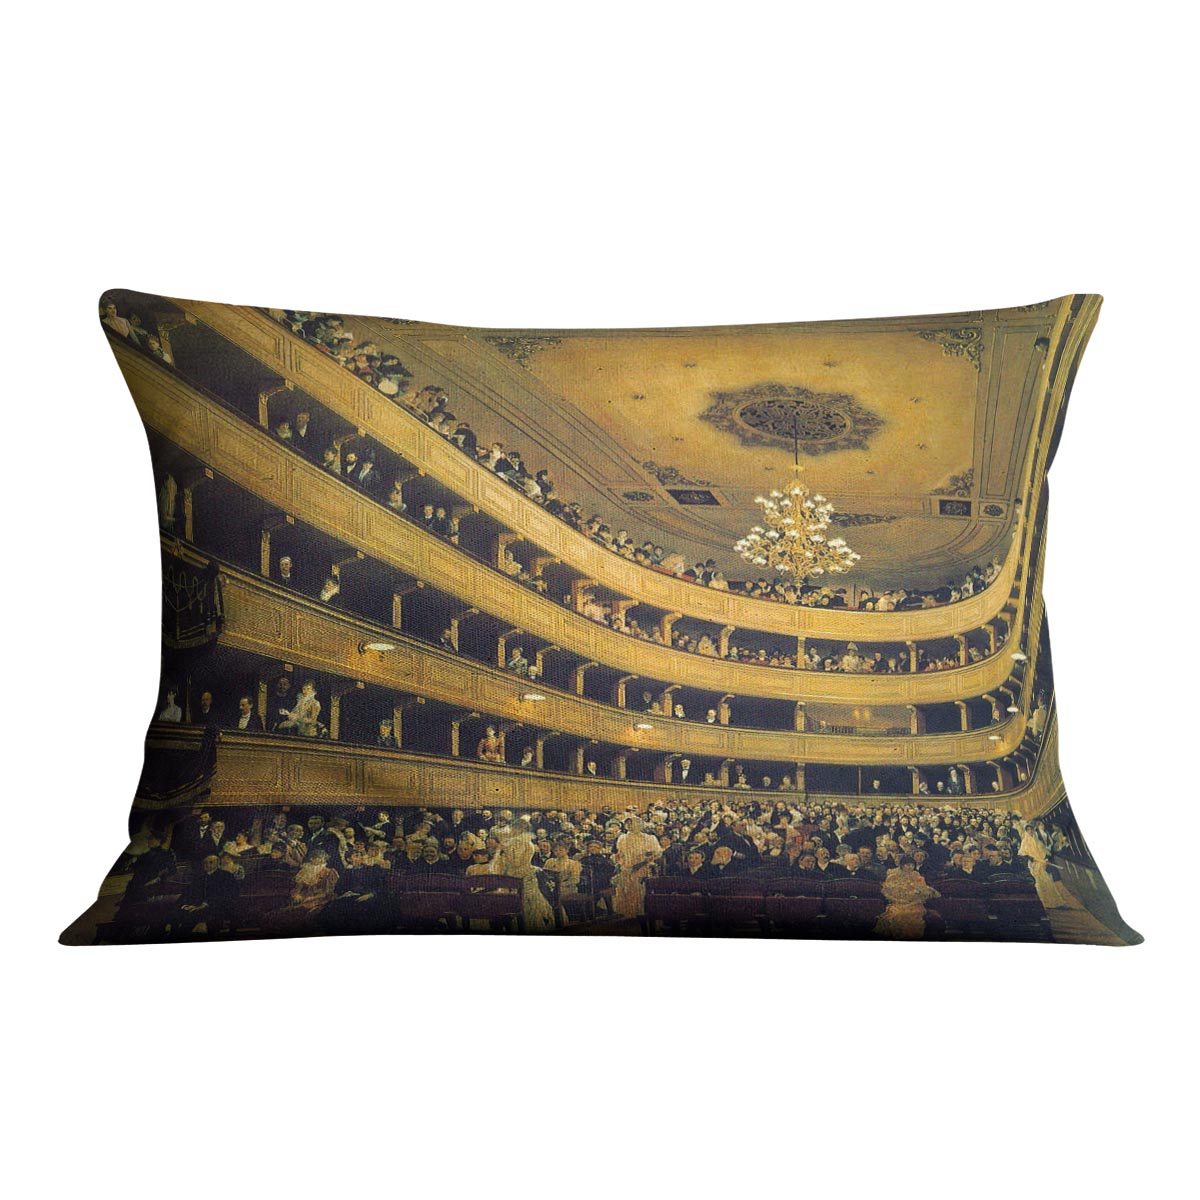 Hall by Klimt Cushion